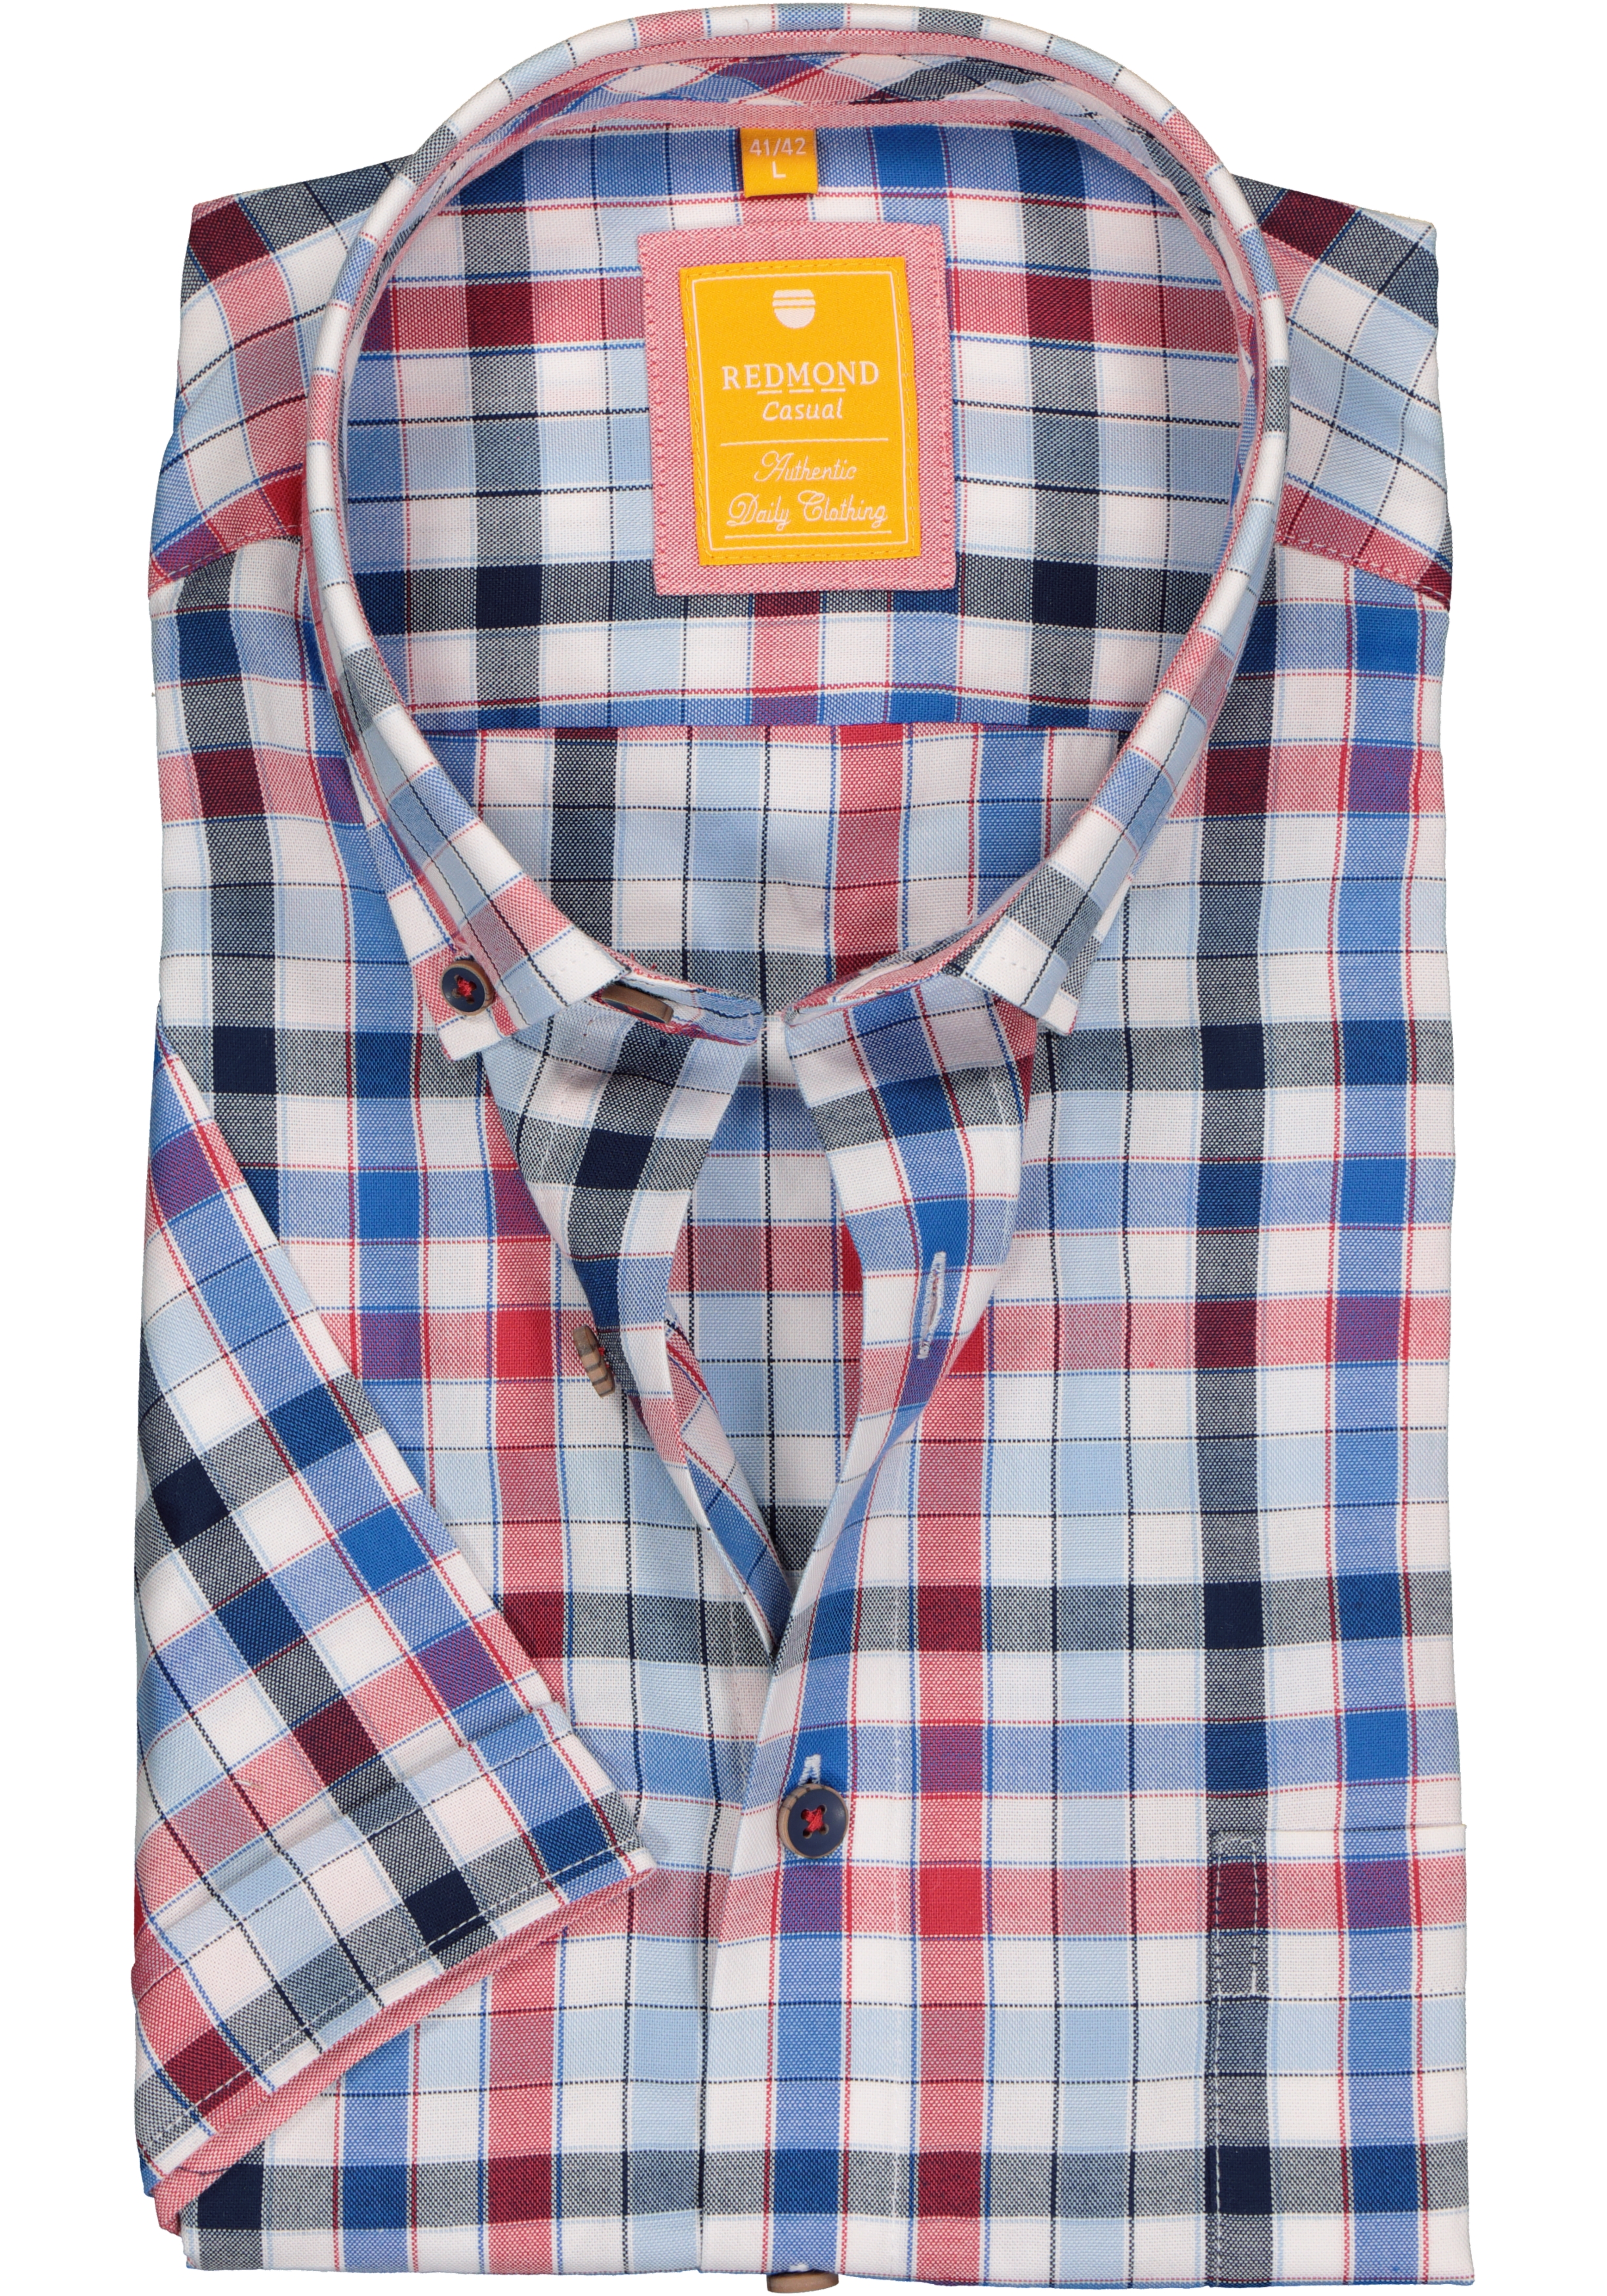 George Hanbury dichtbij ontwerper Redmond modern fit overhemd, korte mouw, Oxford, blauw, wit en rood geruit  - Shop de nieuwste voorjaarsmode